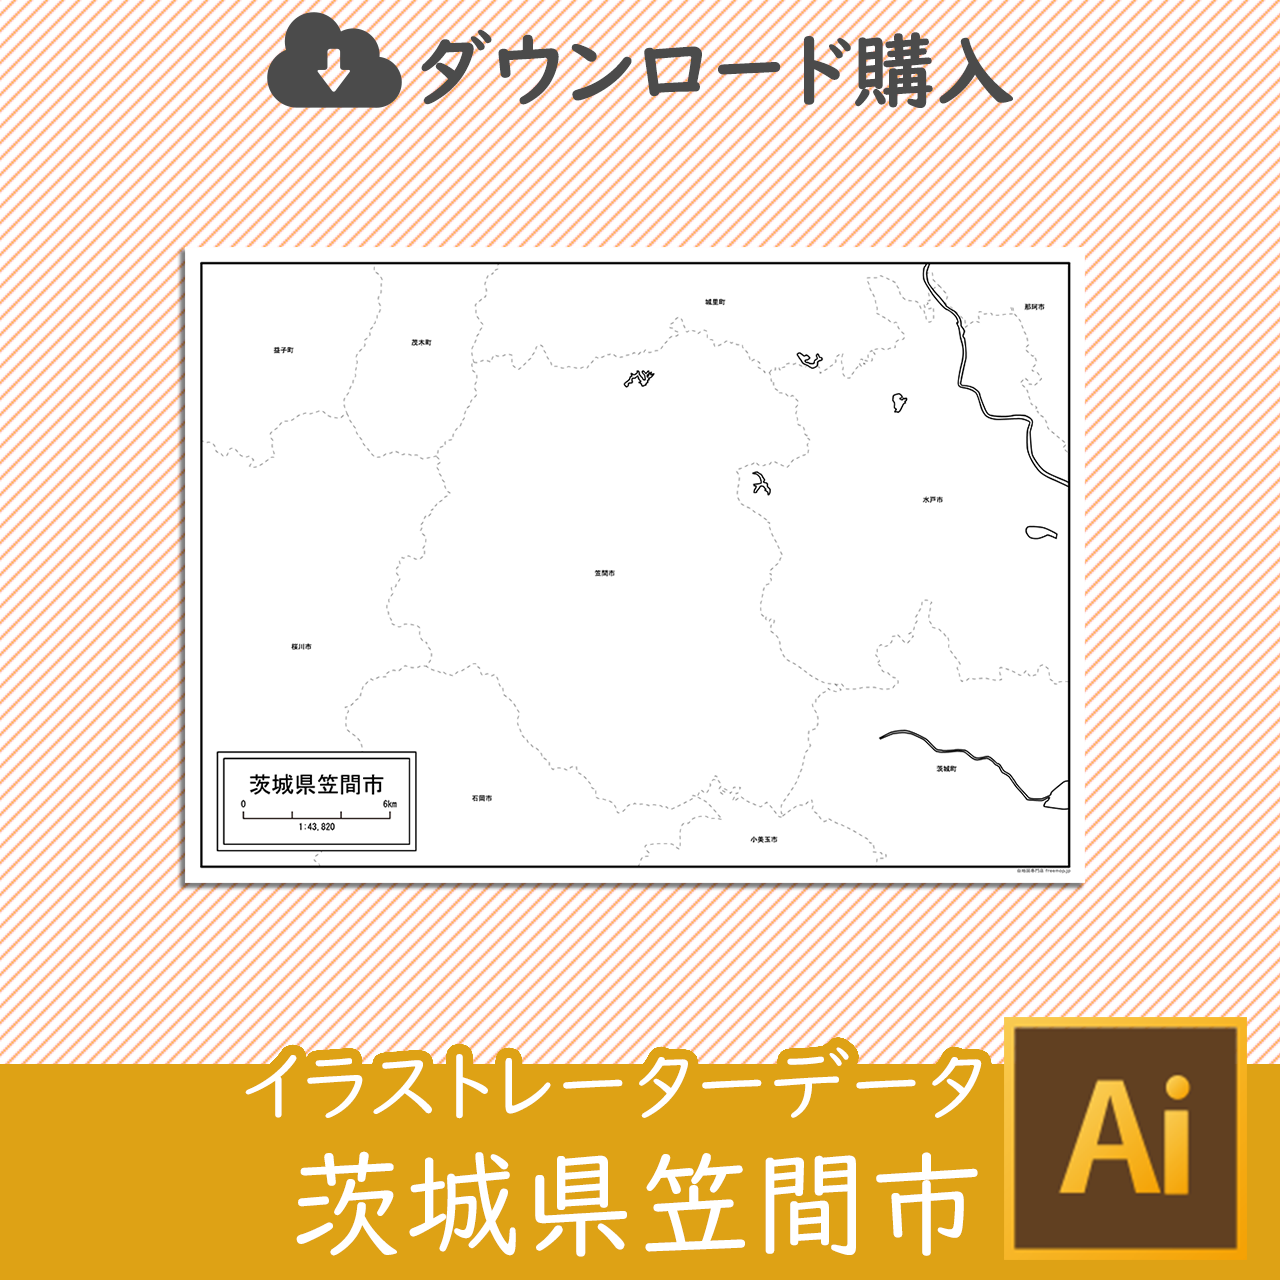 笠間市のaiデータのサムネイル画像